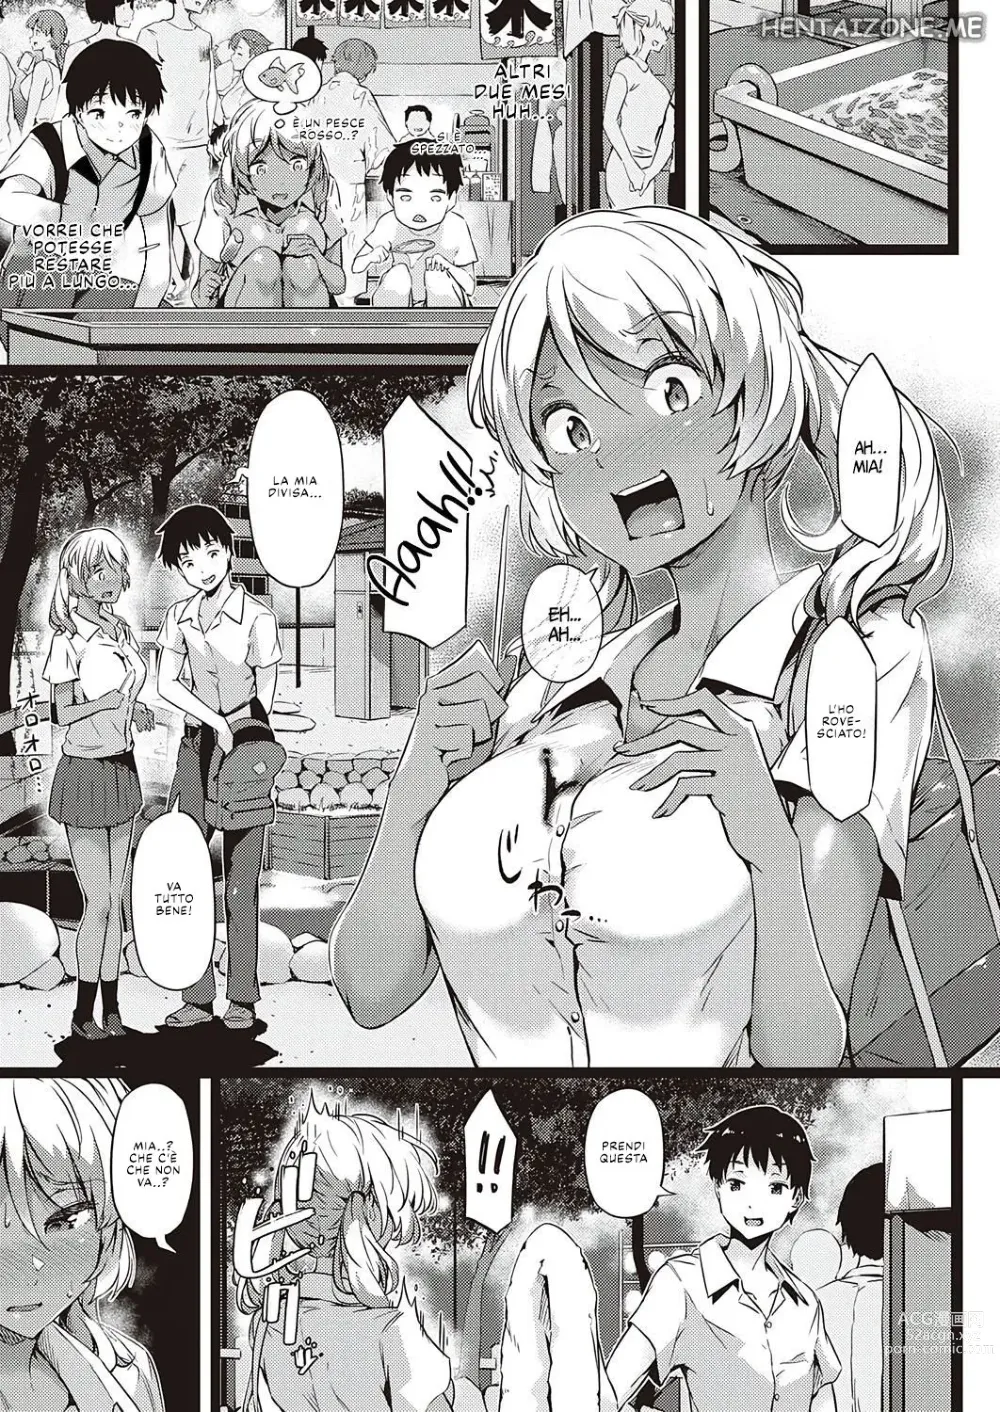 Page 9 of manga Kurumi Joucho (decensored)